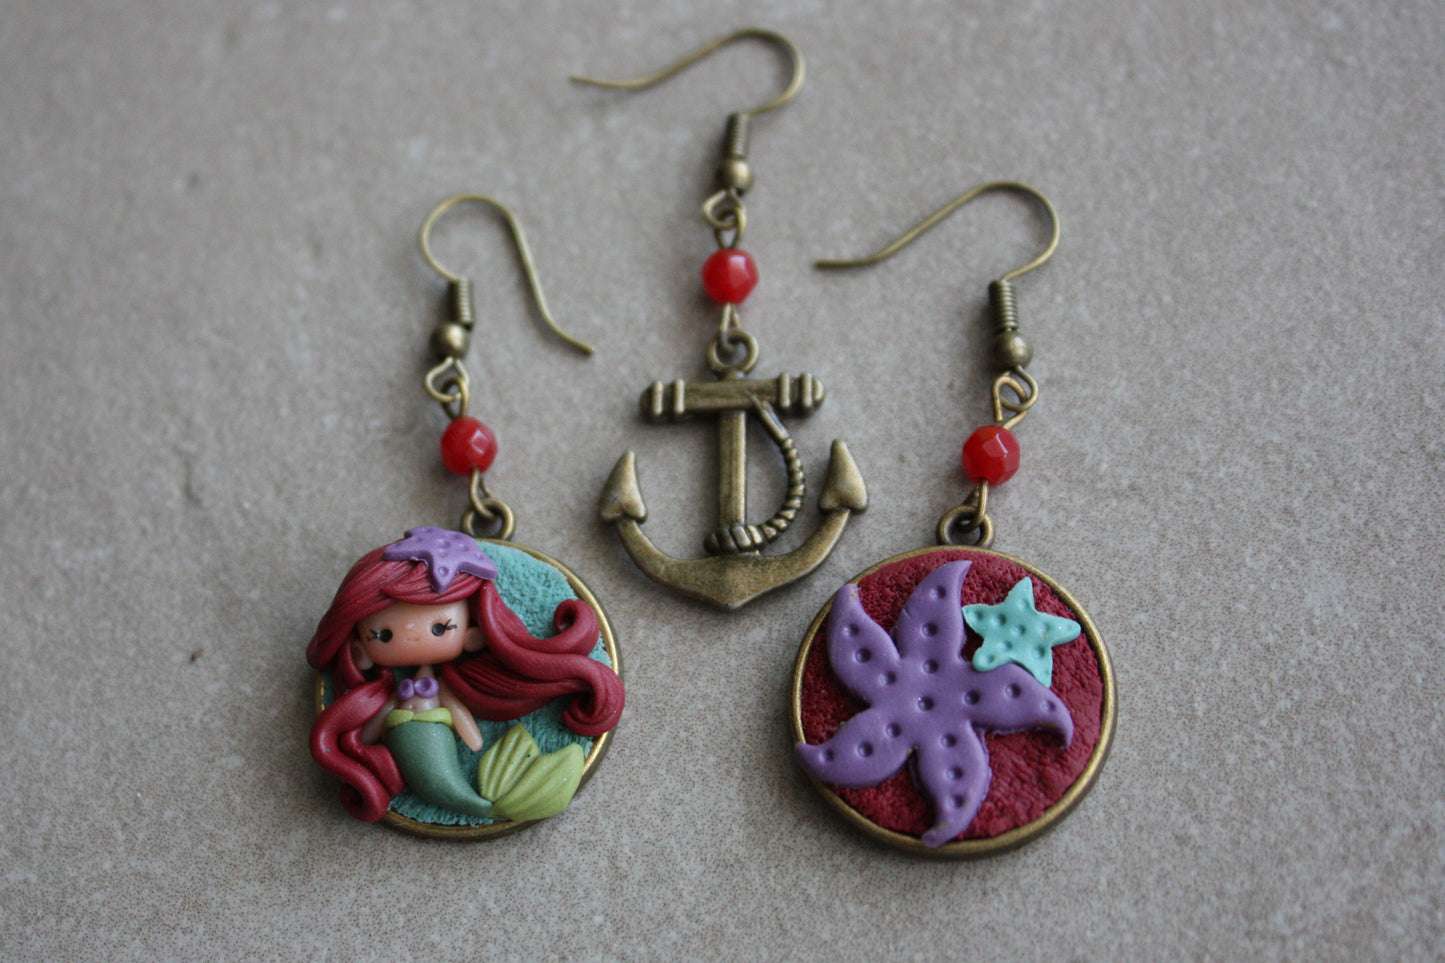 Ariel pendant earrings